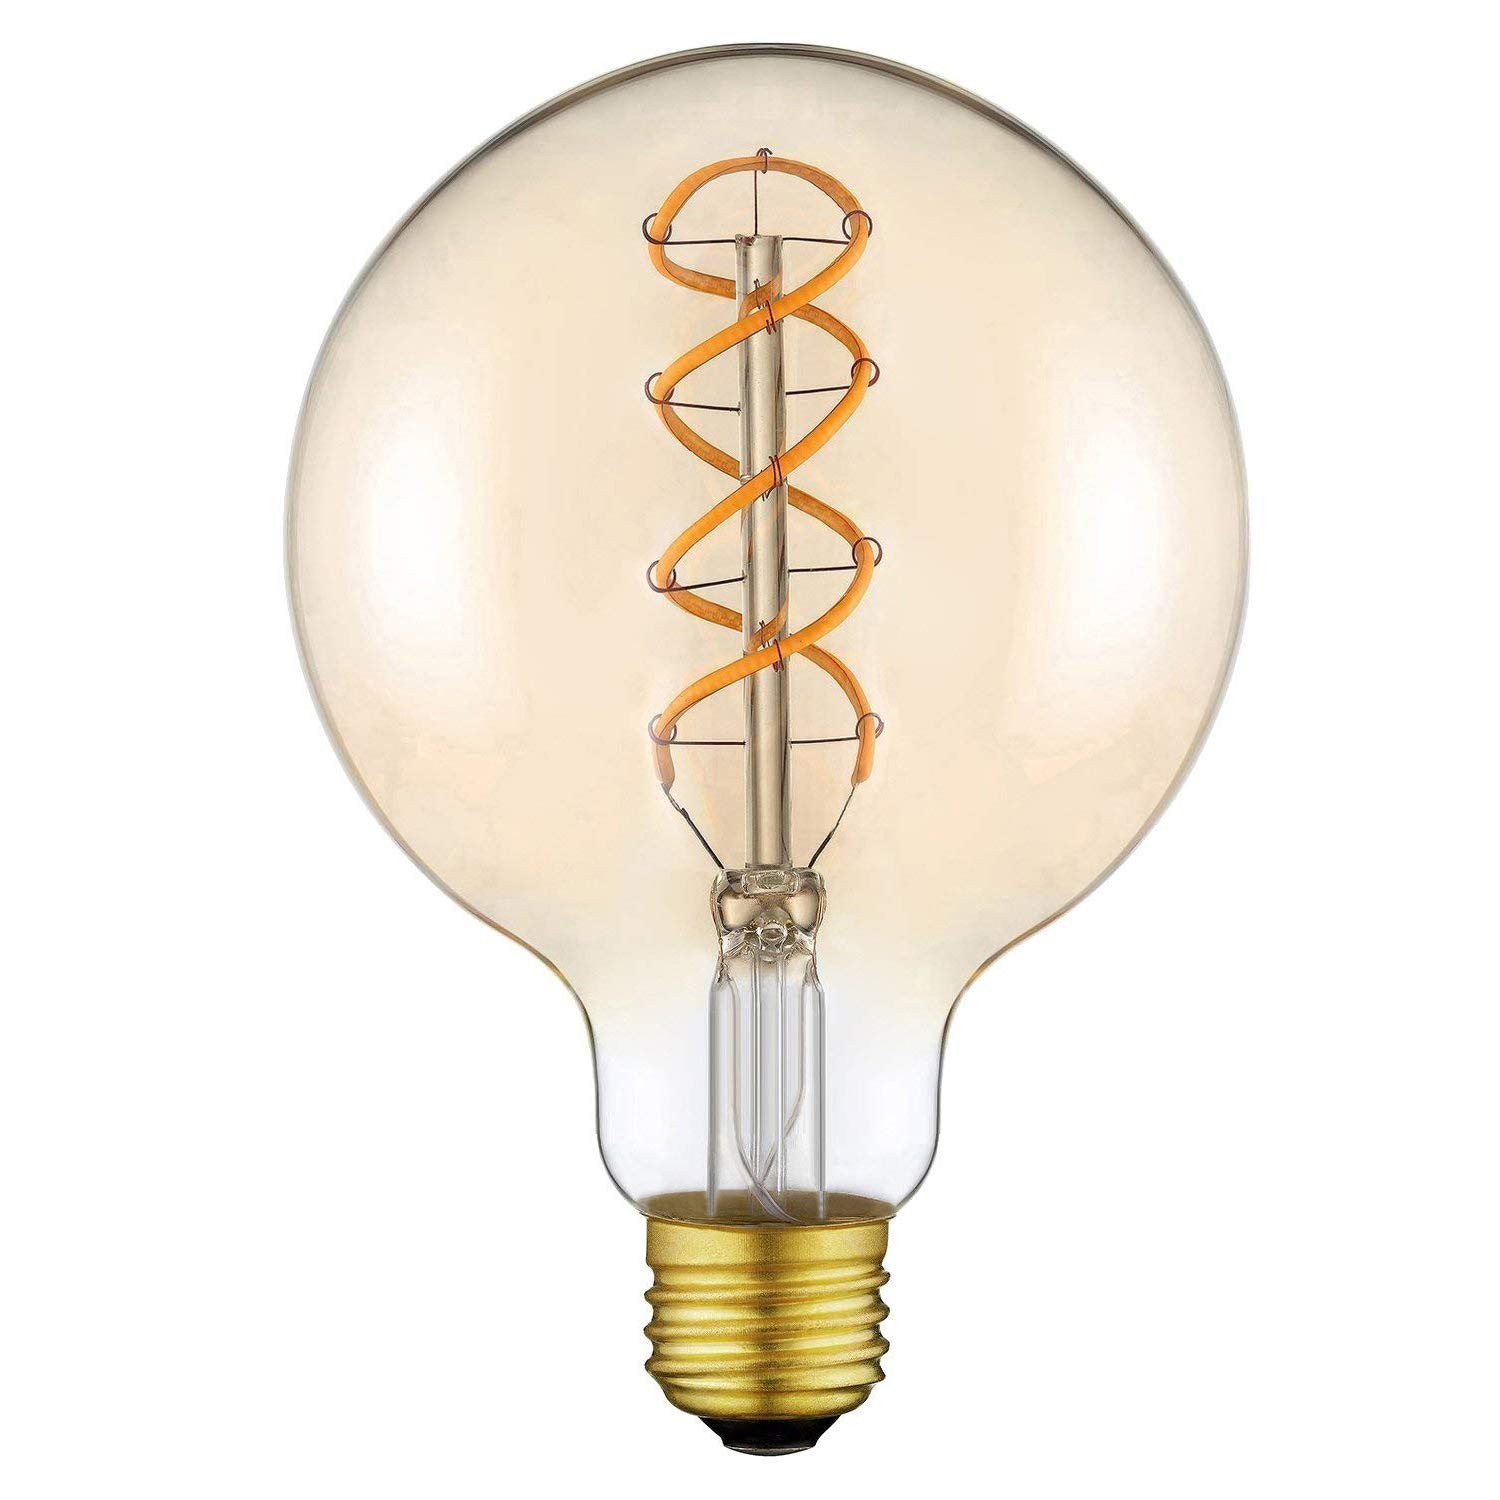 6er-set, Warmes Weiß-801 Edison Lampe E27 G80 4W Warmweiss Antike Filament LED Glühlampe Ideal für Loft Coffee Nostalgie Bar Restaurant Kitchen Lights. Edison Glühbirne 